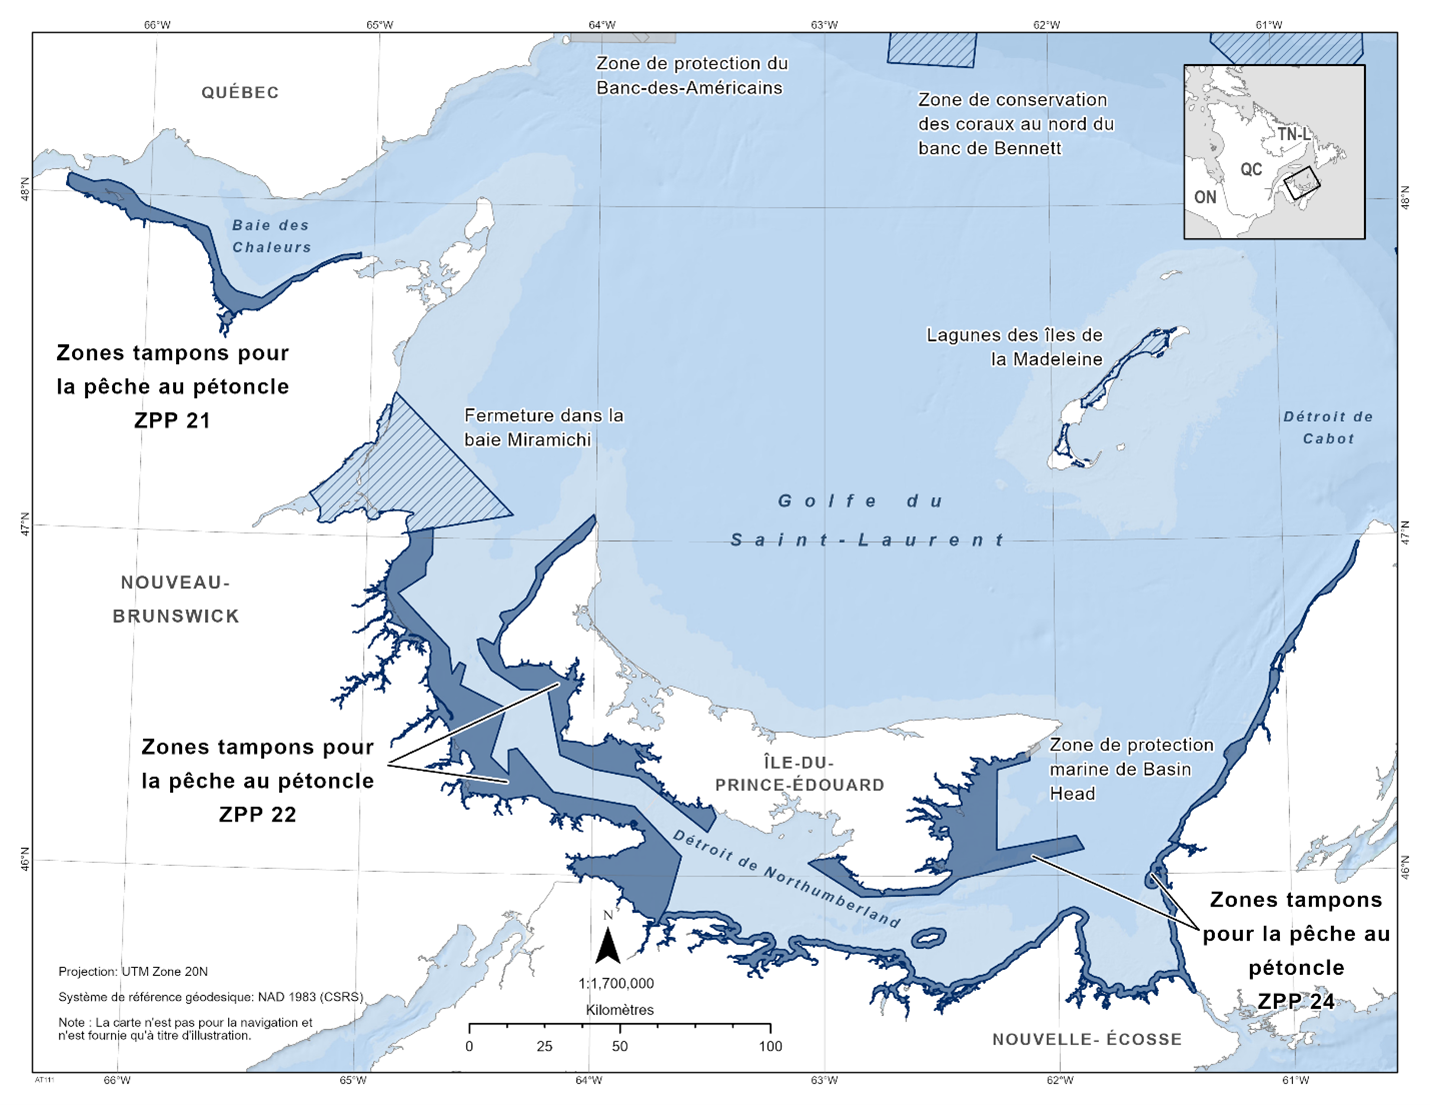 Carte de les zones tampons pour la pêche de pétoncle ZPP 21, ZPP 22 et ZPP 24 représentée en bleu foncé. La carte inclut également les autres refuges marins situés à proximité avec des lignes diagonales bleu foncé (zone de conservation du corail du nord du banc Bennett, lagunes des Îles-de-la-Madeleine, baie de Miramichi).